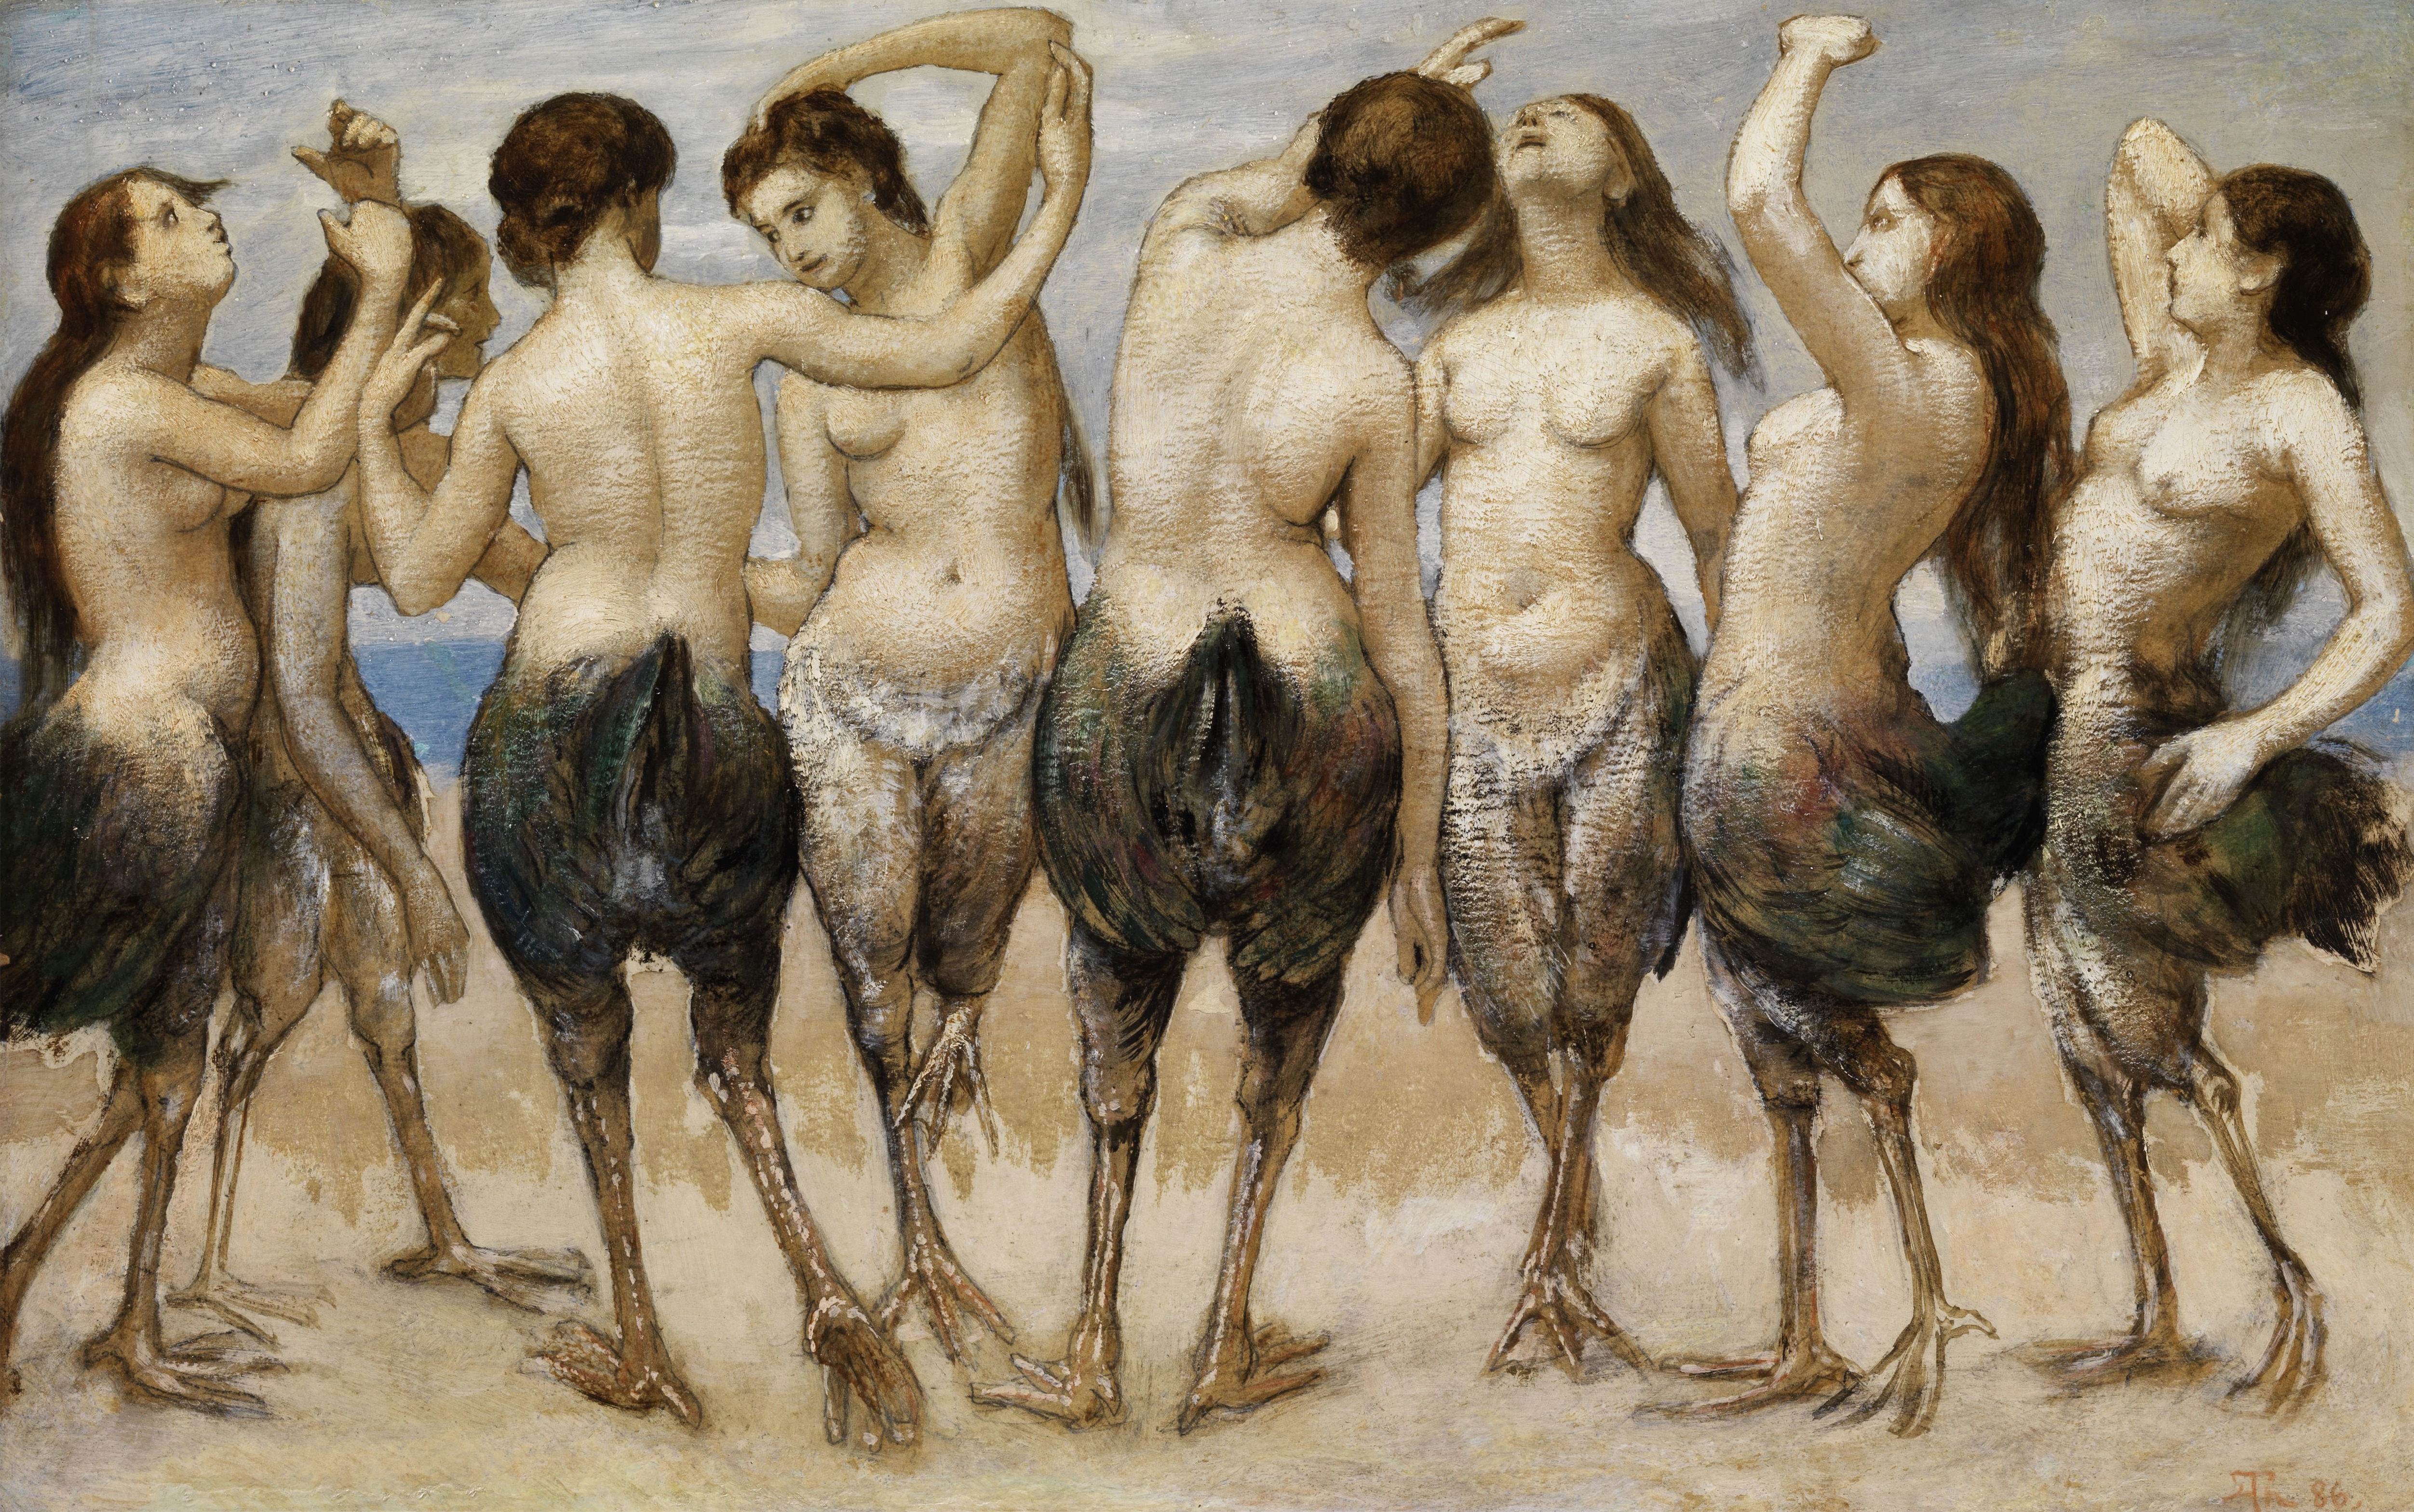 Huit femmes avec le haut du corps nu et le bas du corps d'un oiseau dansent sur le sable